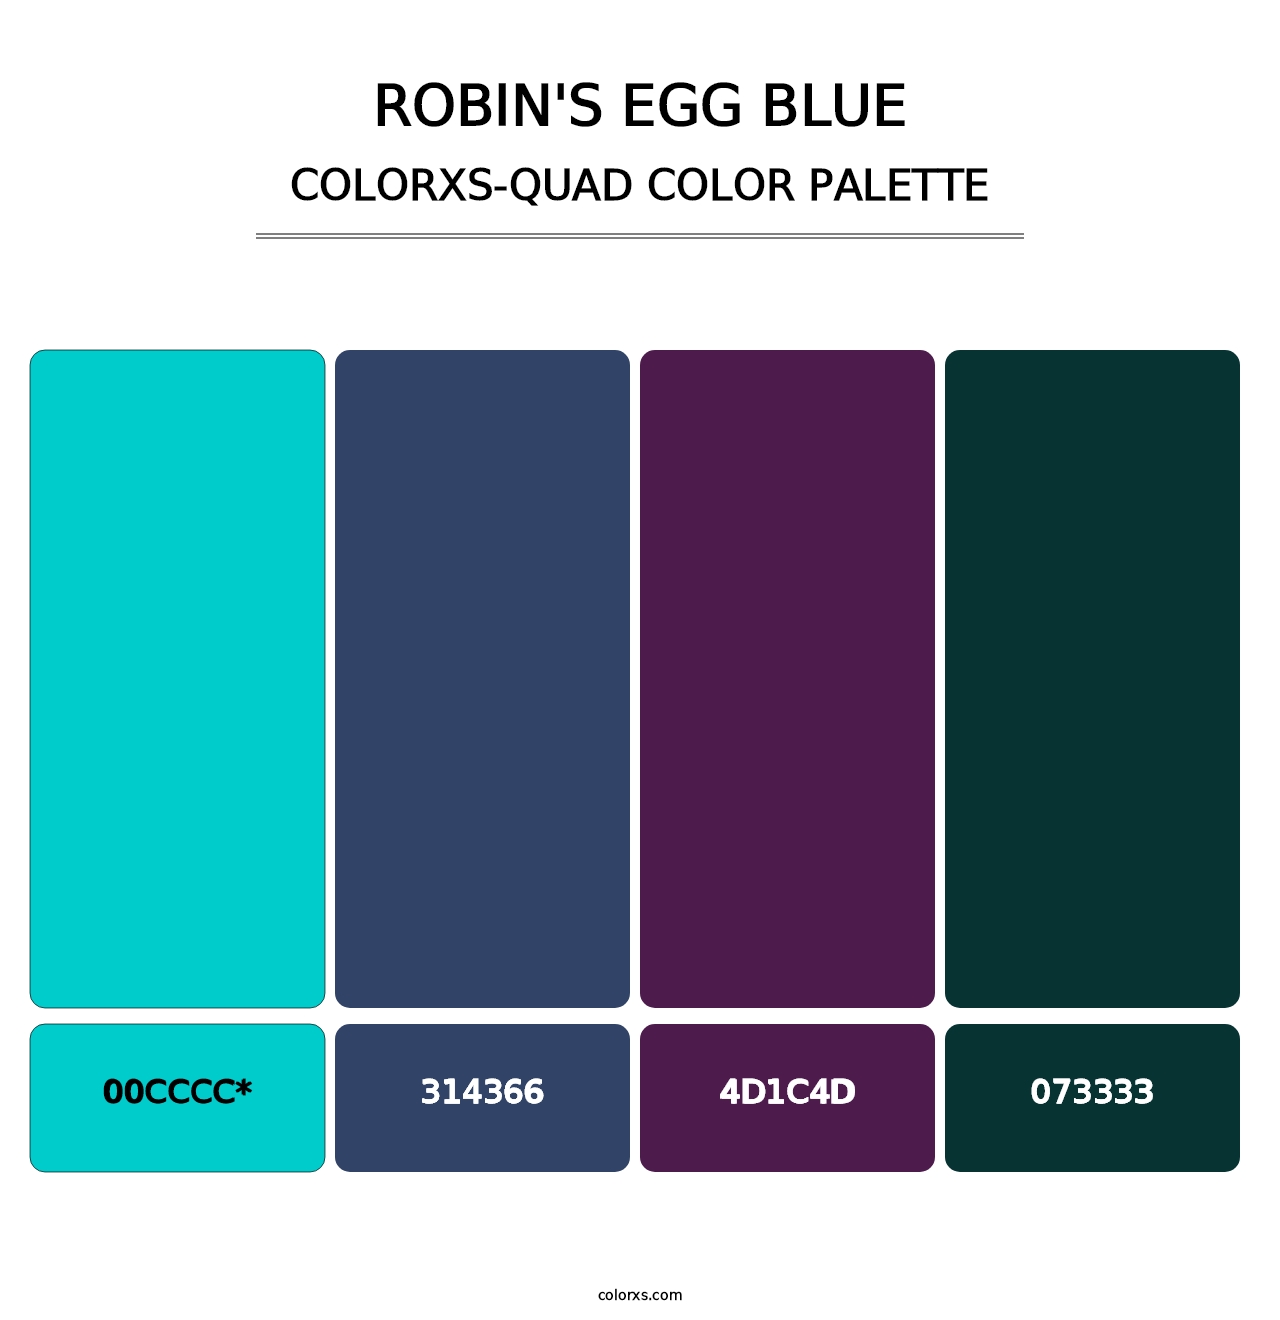 Robin's Egg Blue - Colorxs Quad Palette